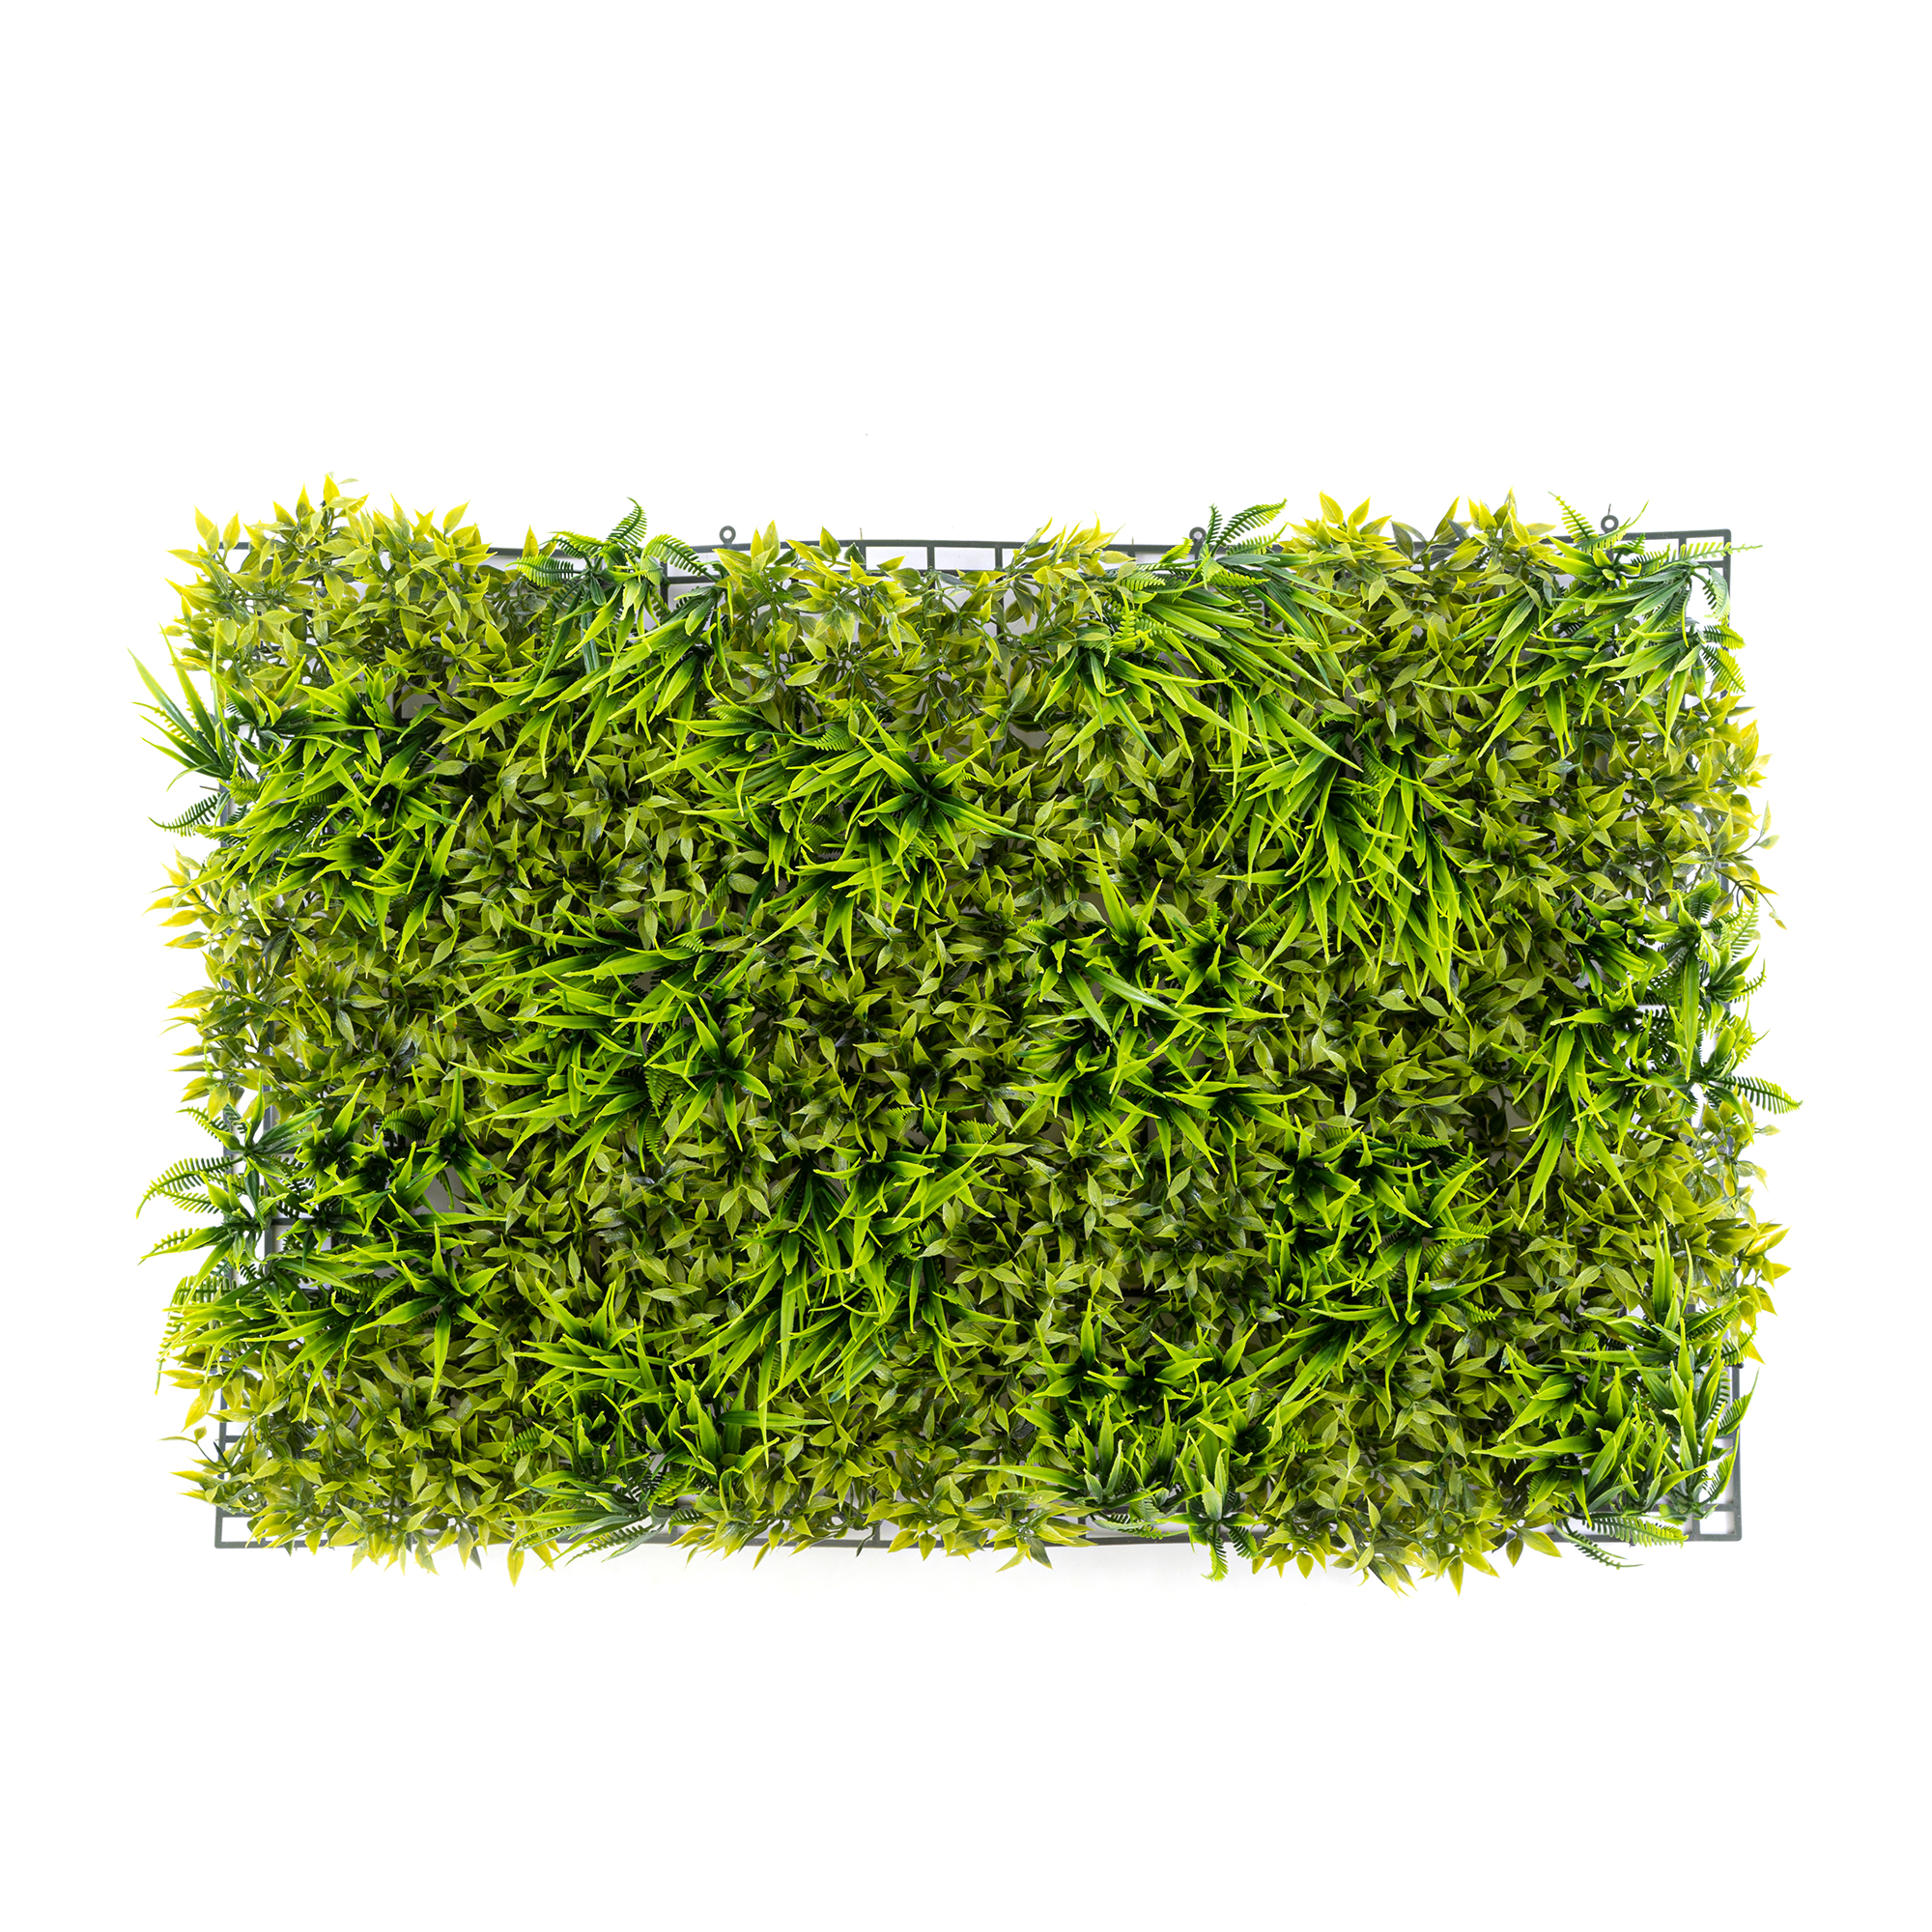 Mixed Artificial Grass Mat 24" - Green